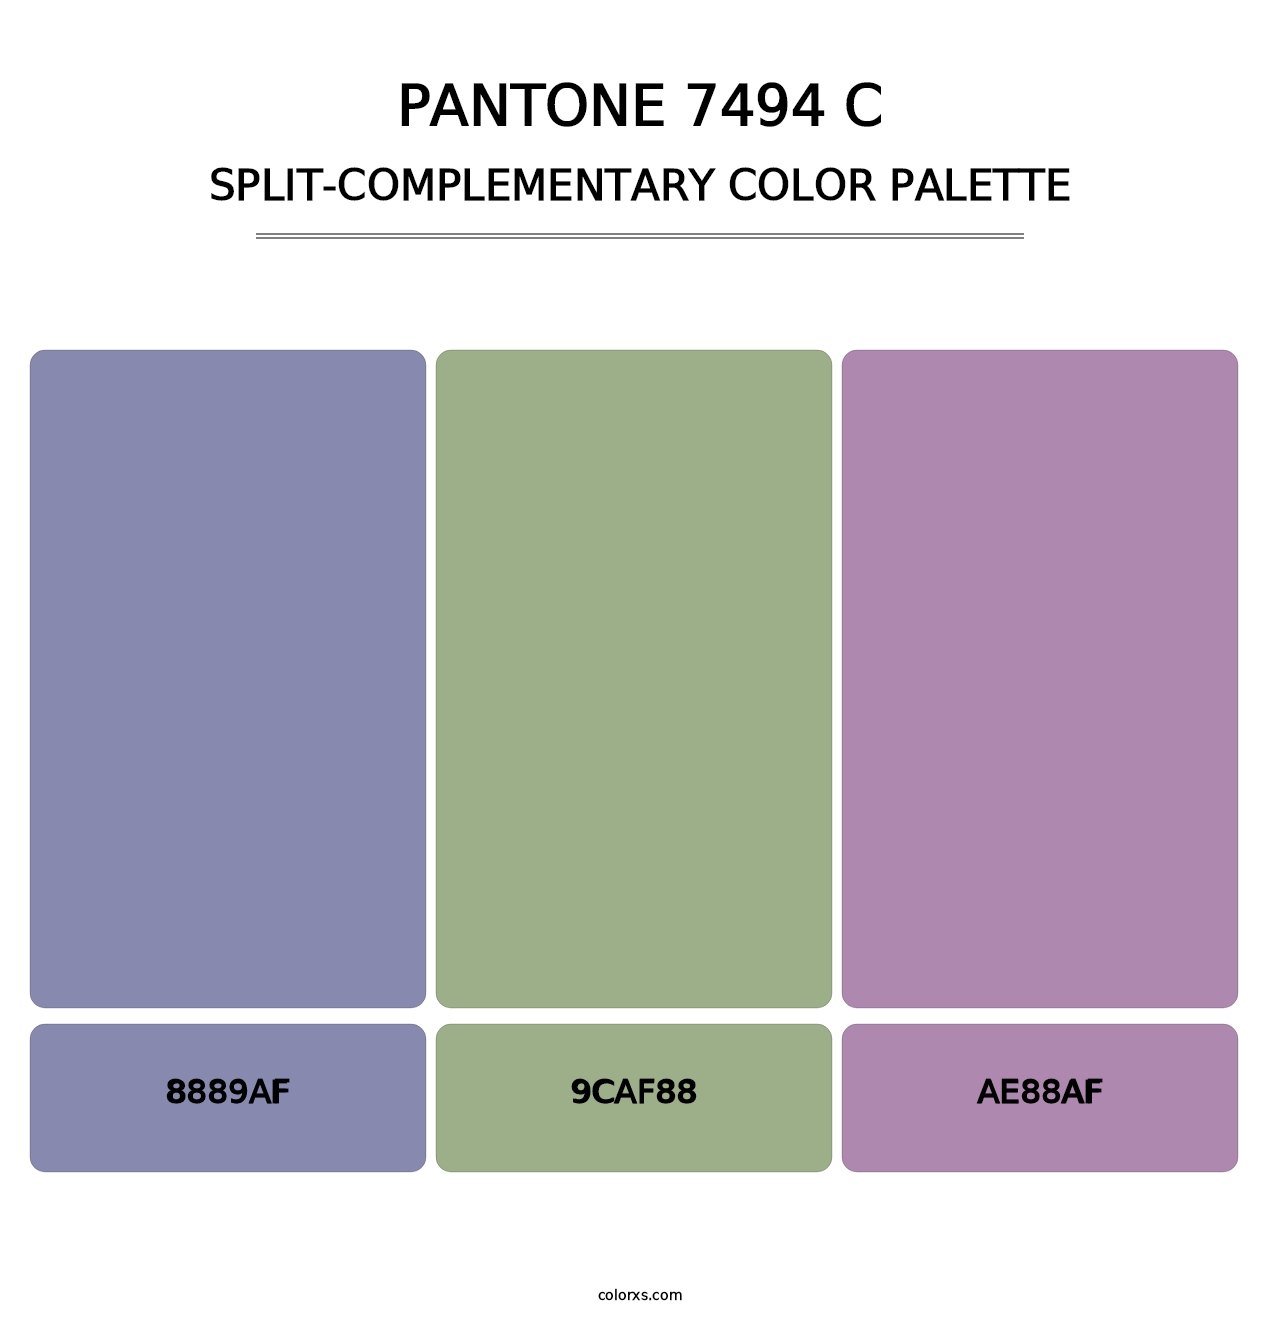 PANTONE 7494 C - Split-Complementary Color Palette